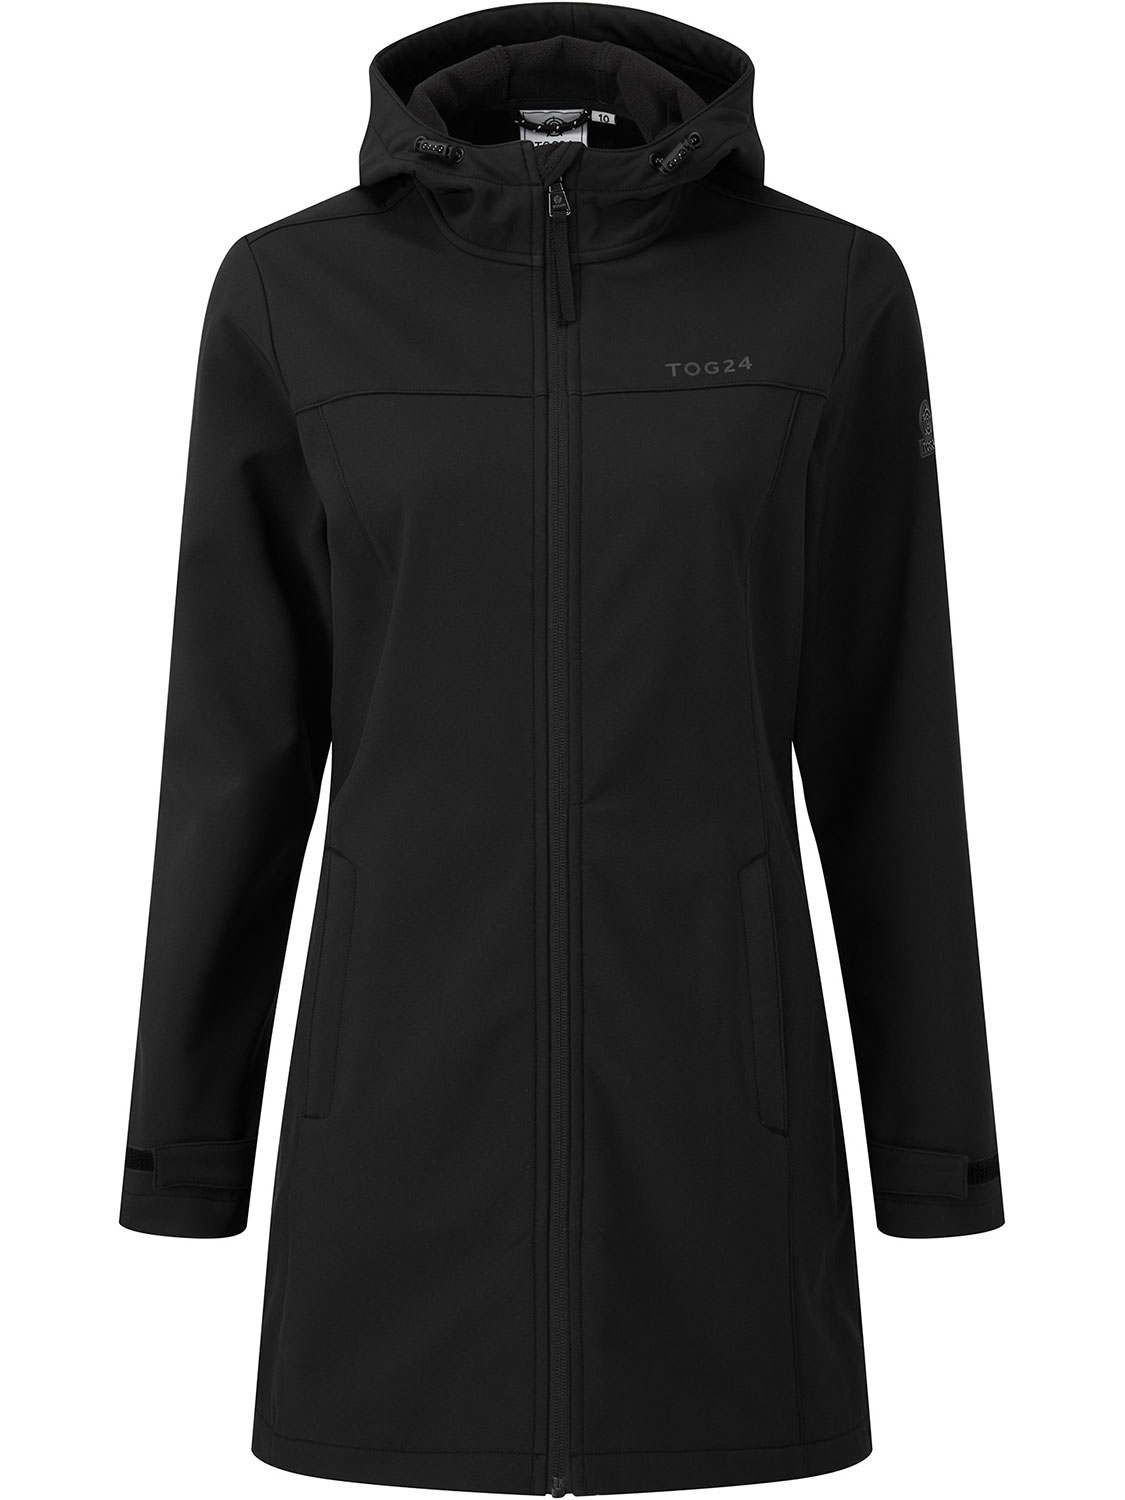 Keld Softshell Long Jacket - Size: 18 Black Tog24